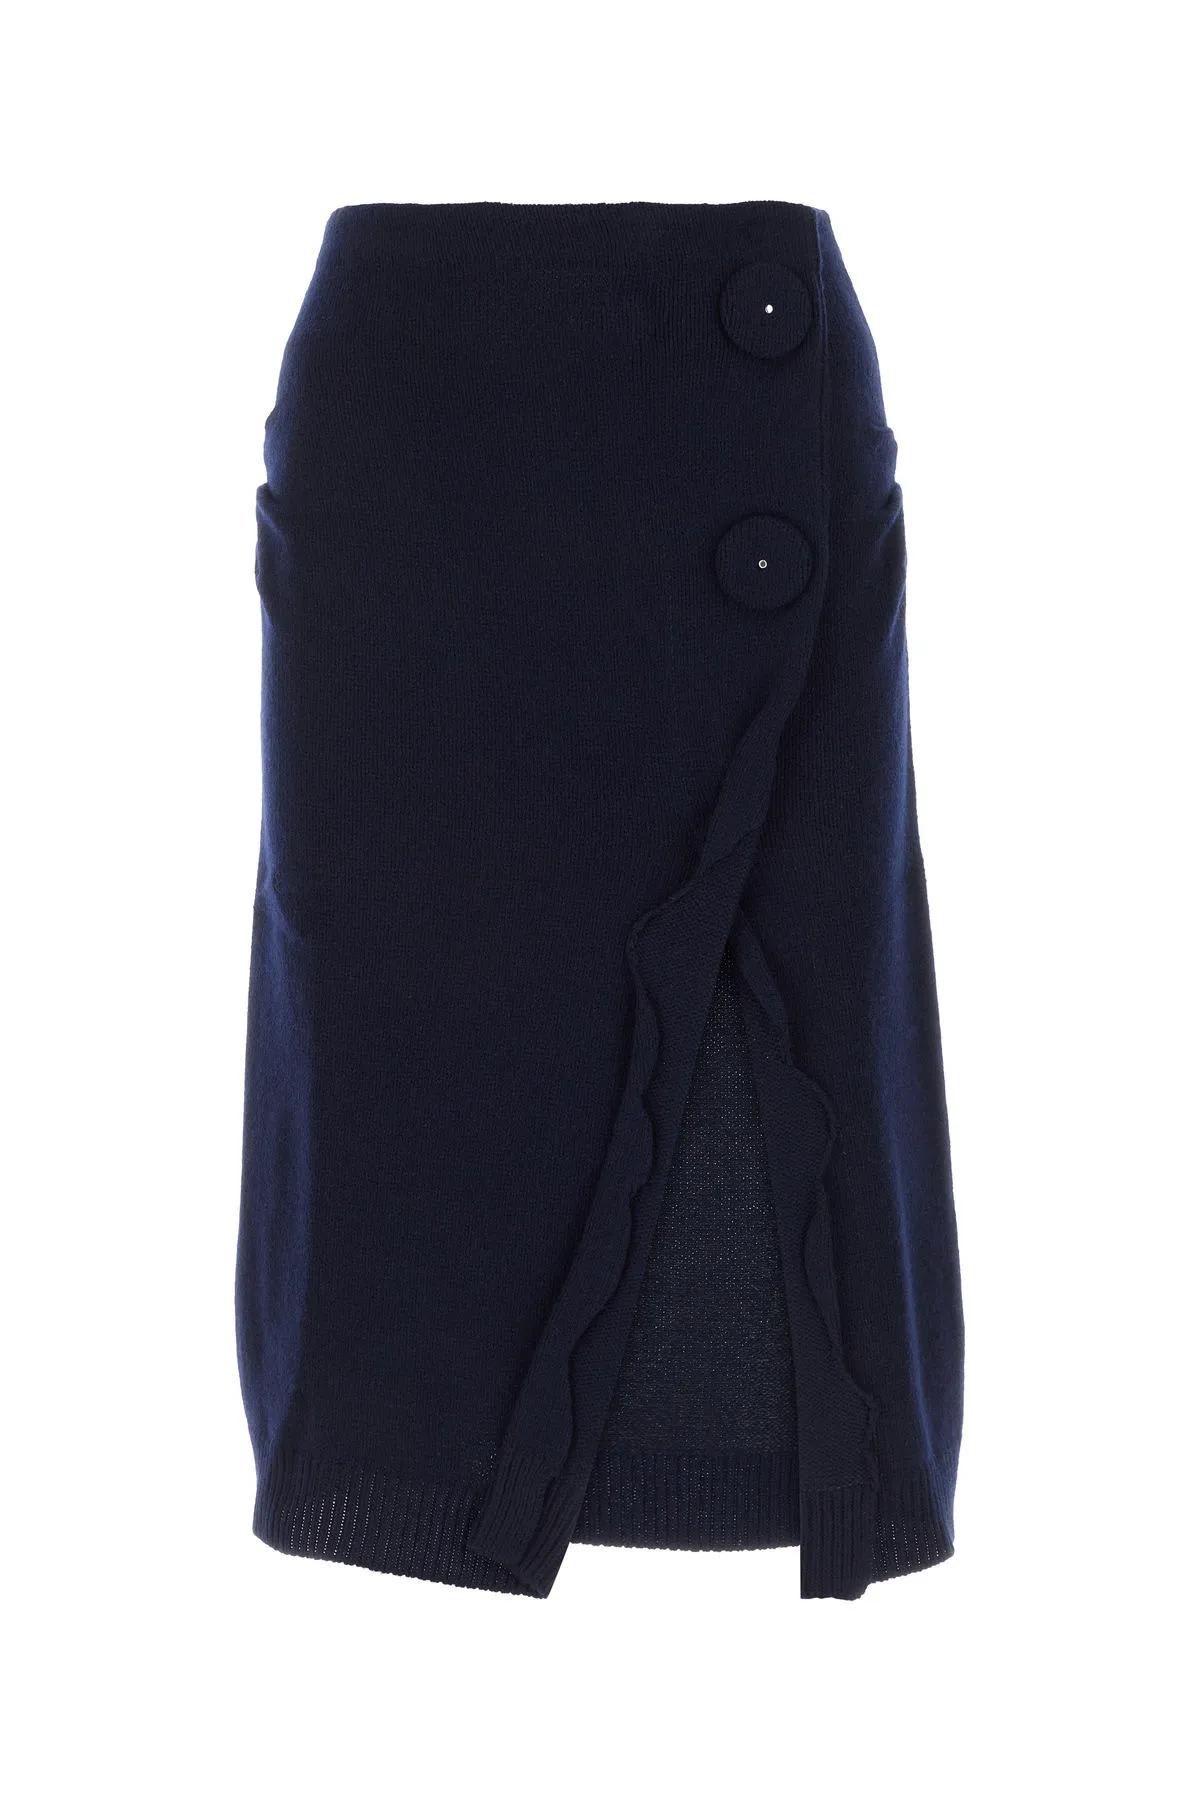 Midnight Blue Wool Blend Skirt